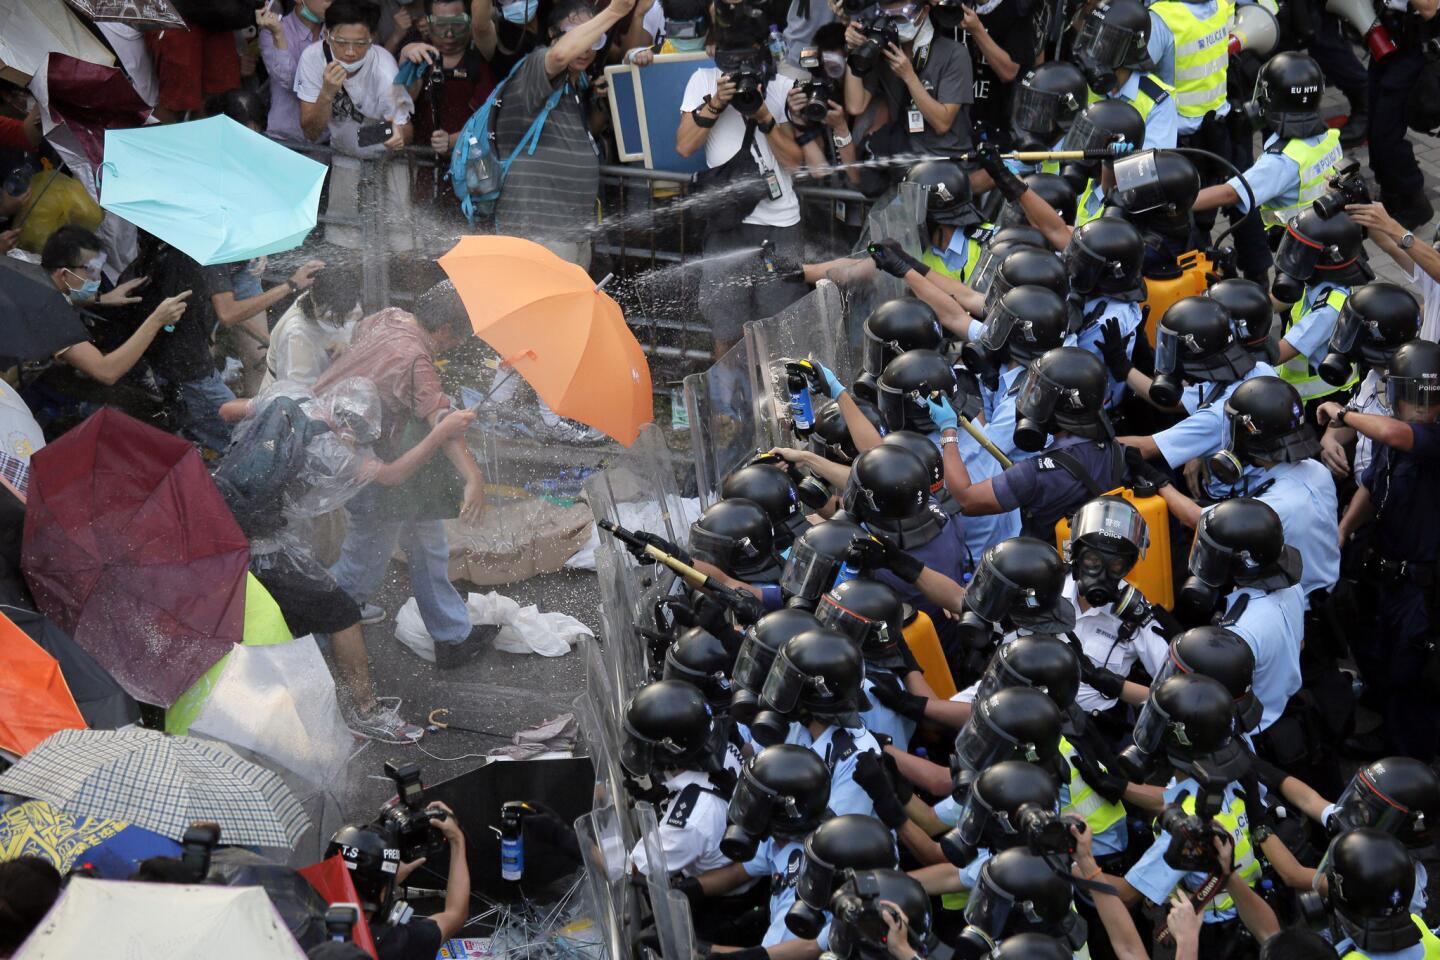 Hong Kong democracy protests